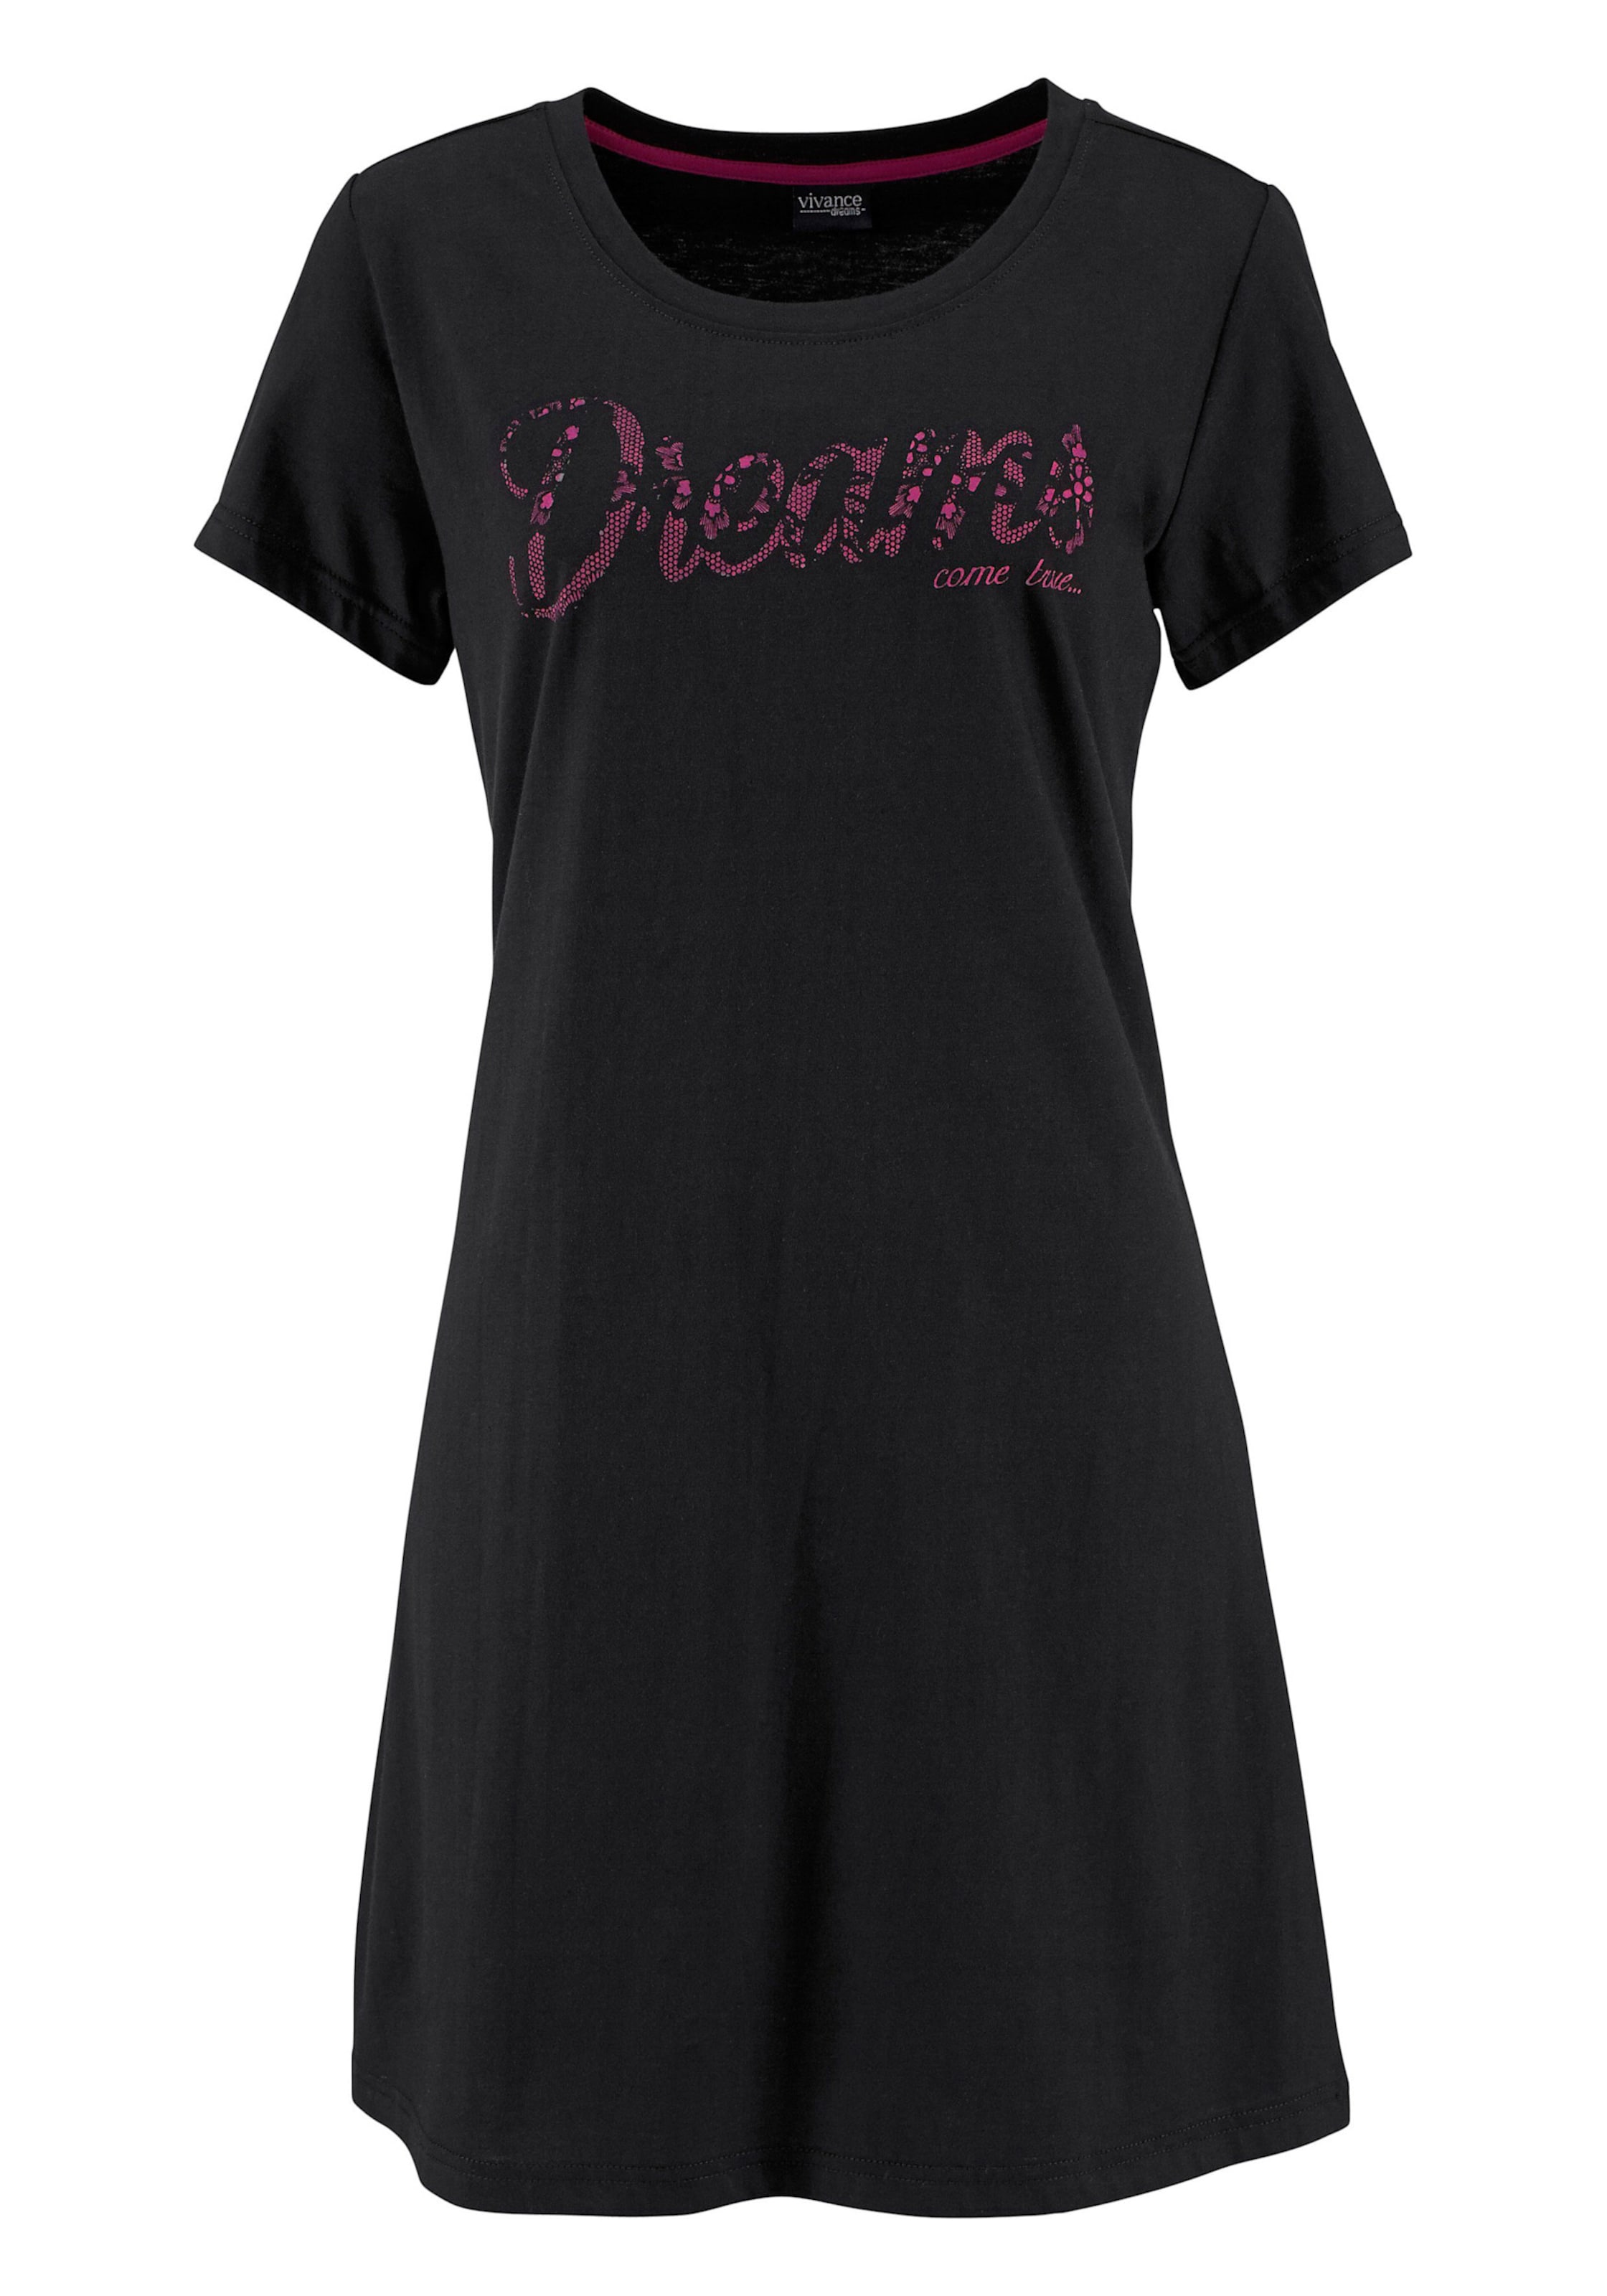 Optik mit günstig Kaufen-Sleepshirt in pink, schwarz von Vivance Dreams. Sleepshirt in pink, schwarz von Vivance Dreams <![CDATA[Modischer Kurz-Style mit Rundhalsausschnitt, kurzen Ärmeln und Frontdruck in Spitzen-Optik. Single-Jersey aus 100% Baumwolle.]]>. 